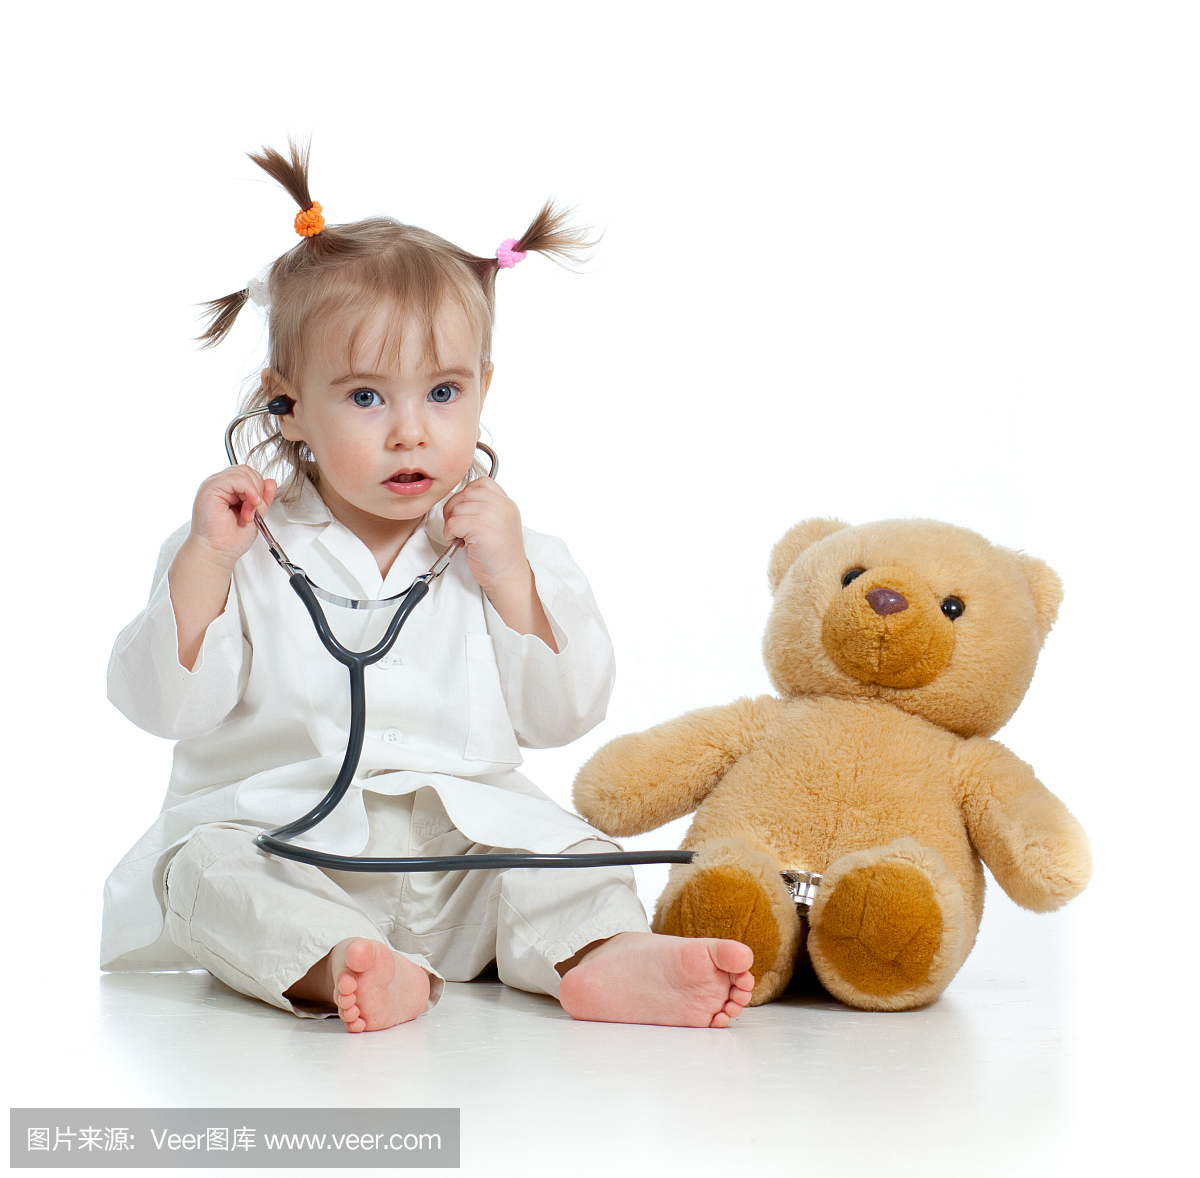 可爱的小孩女孩与医生和玩具玩具的衣服